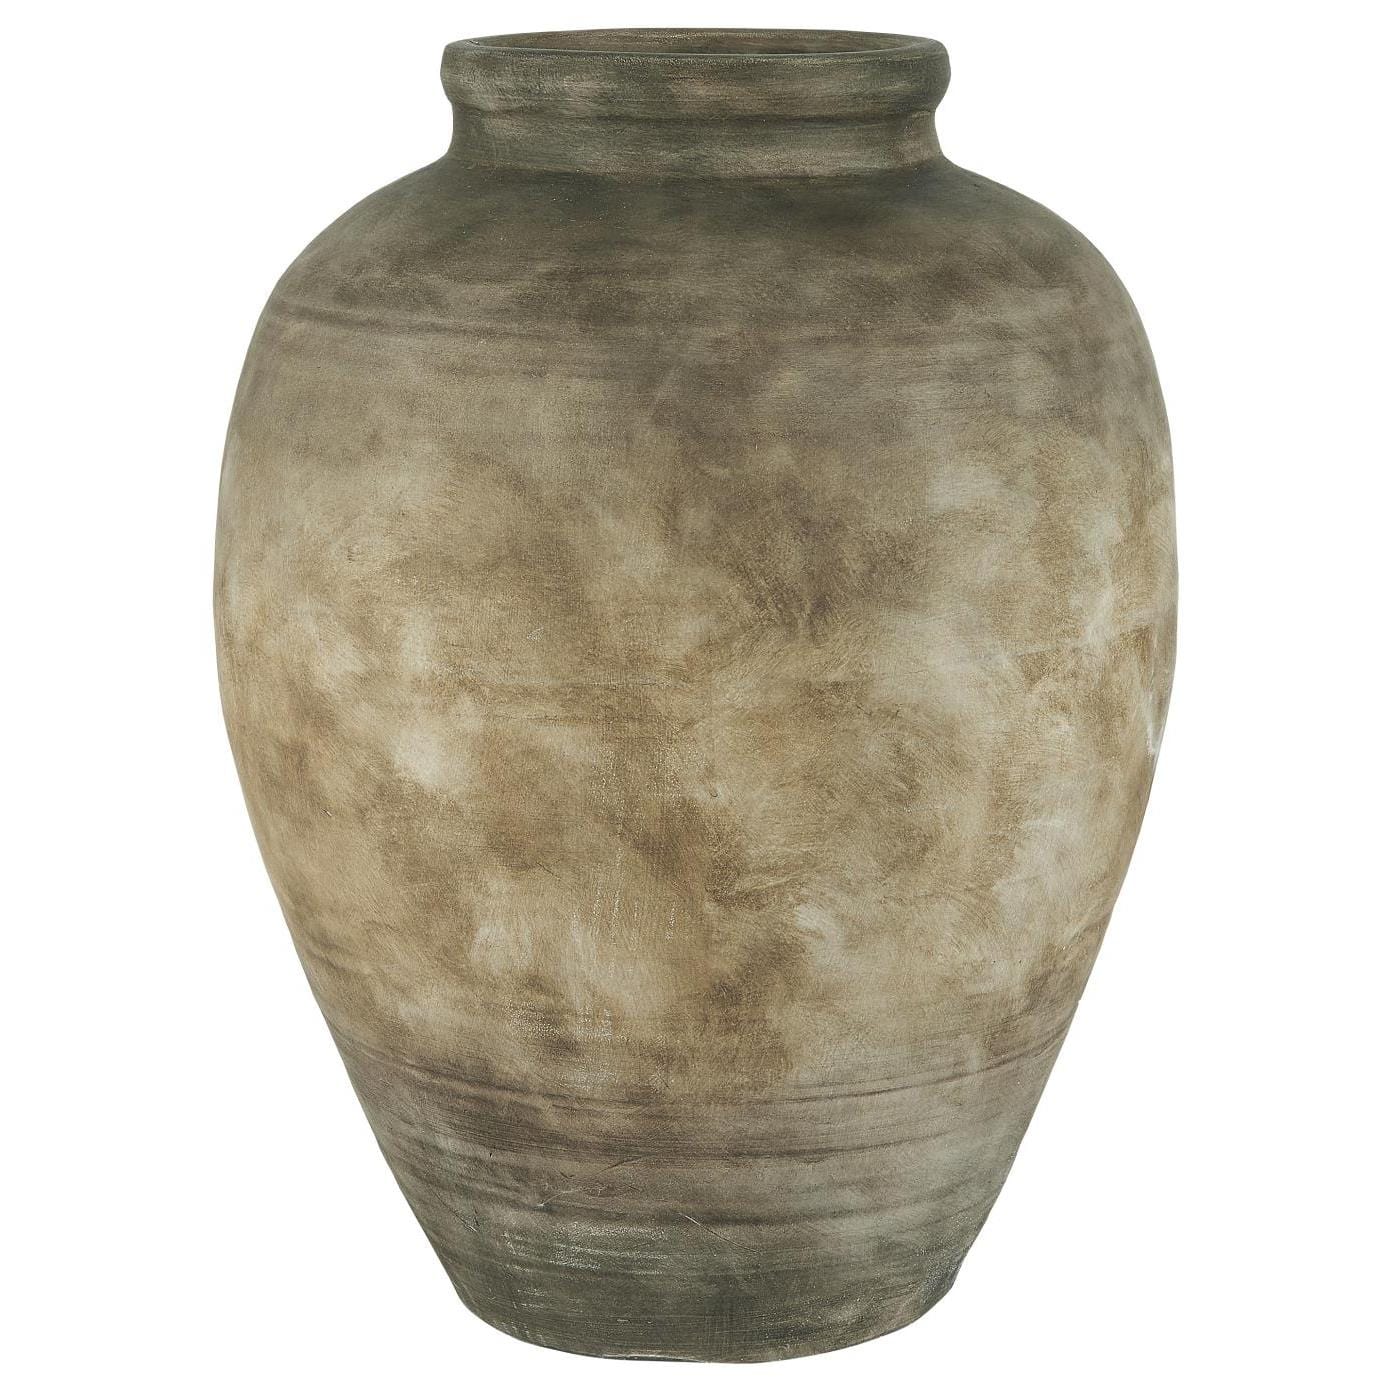 Keramikk krukke ~ vakker patina H57cm ~ Hentes i gårdsbutikk